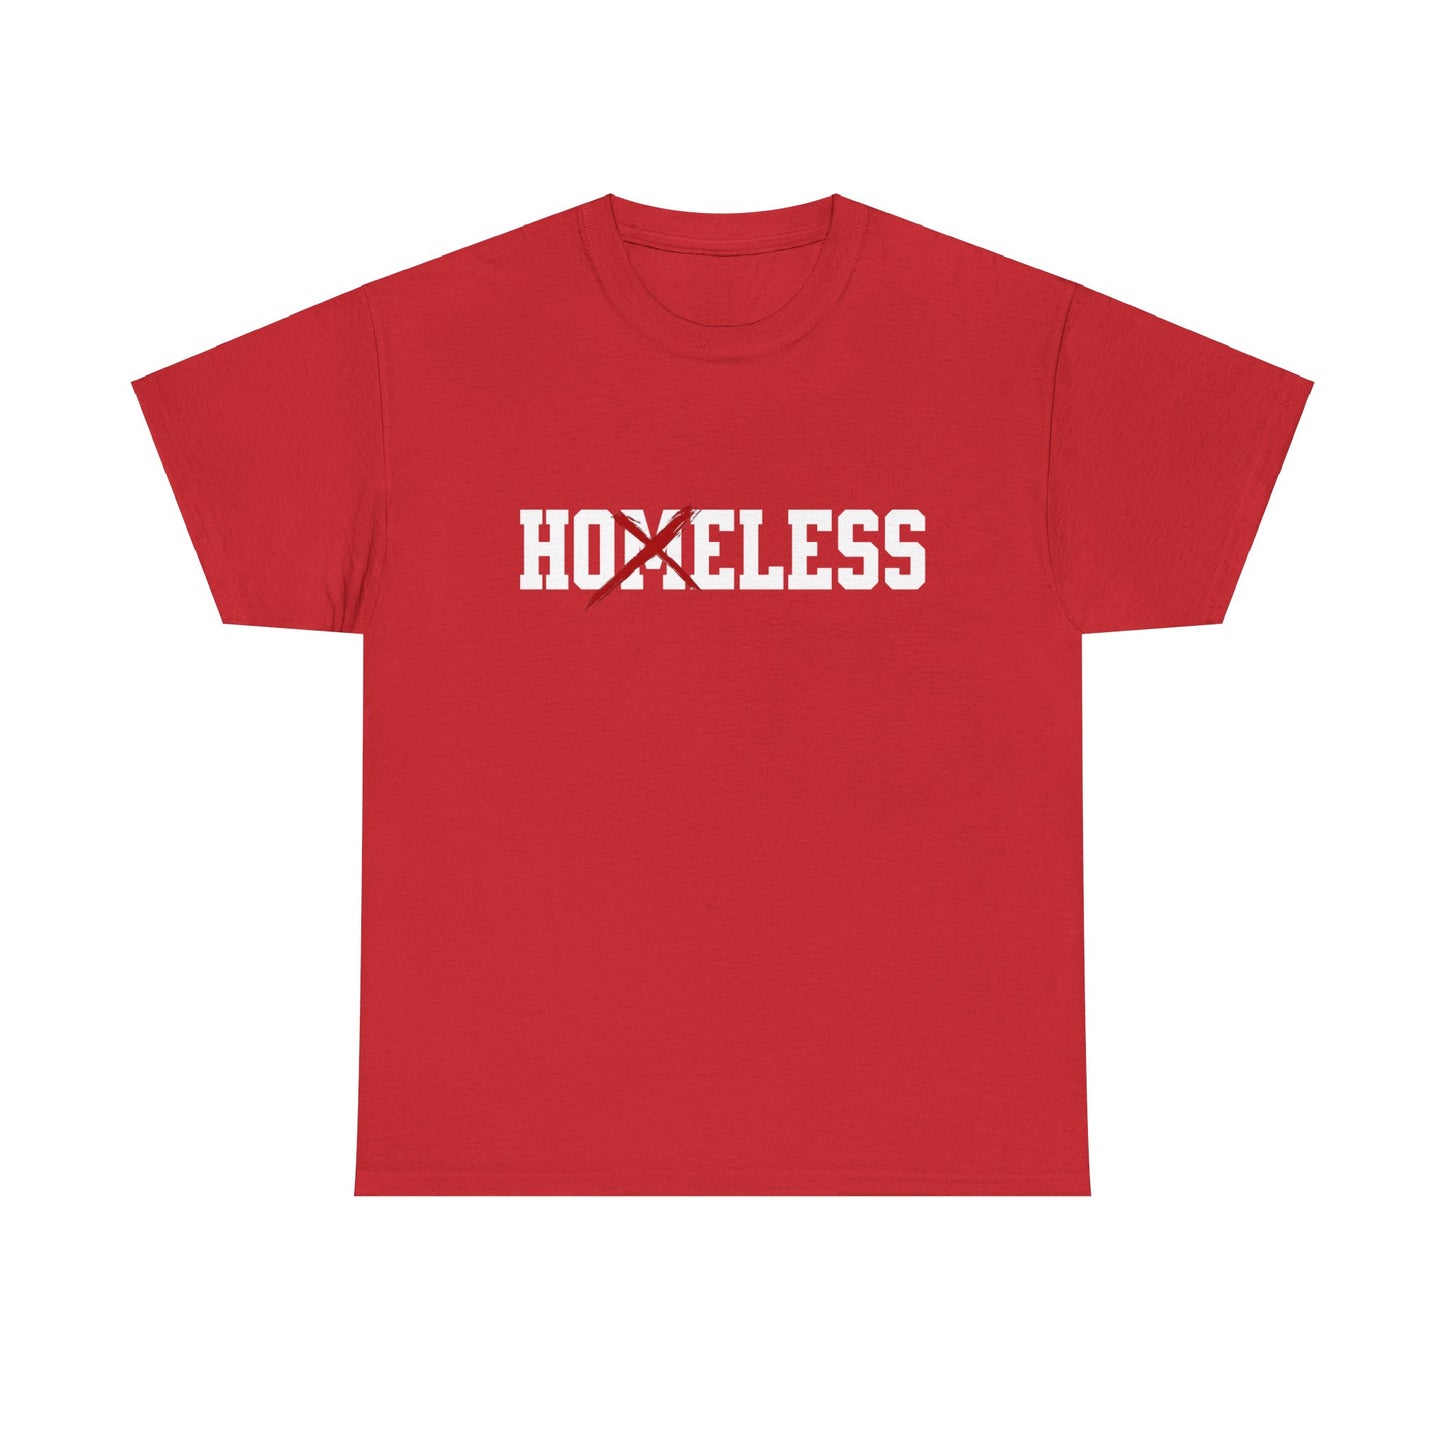 Unisex Shirt in rot mit dem Spruch Homeless drauf. Das M ist durchgestrichen; also steht auf dem Shirt Hoeless.